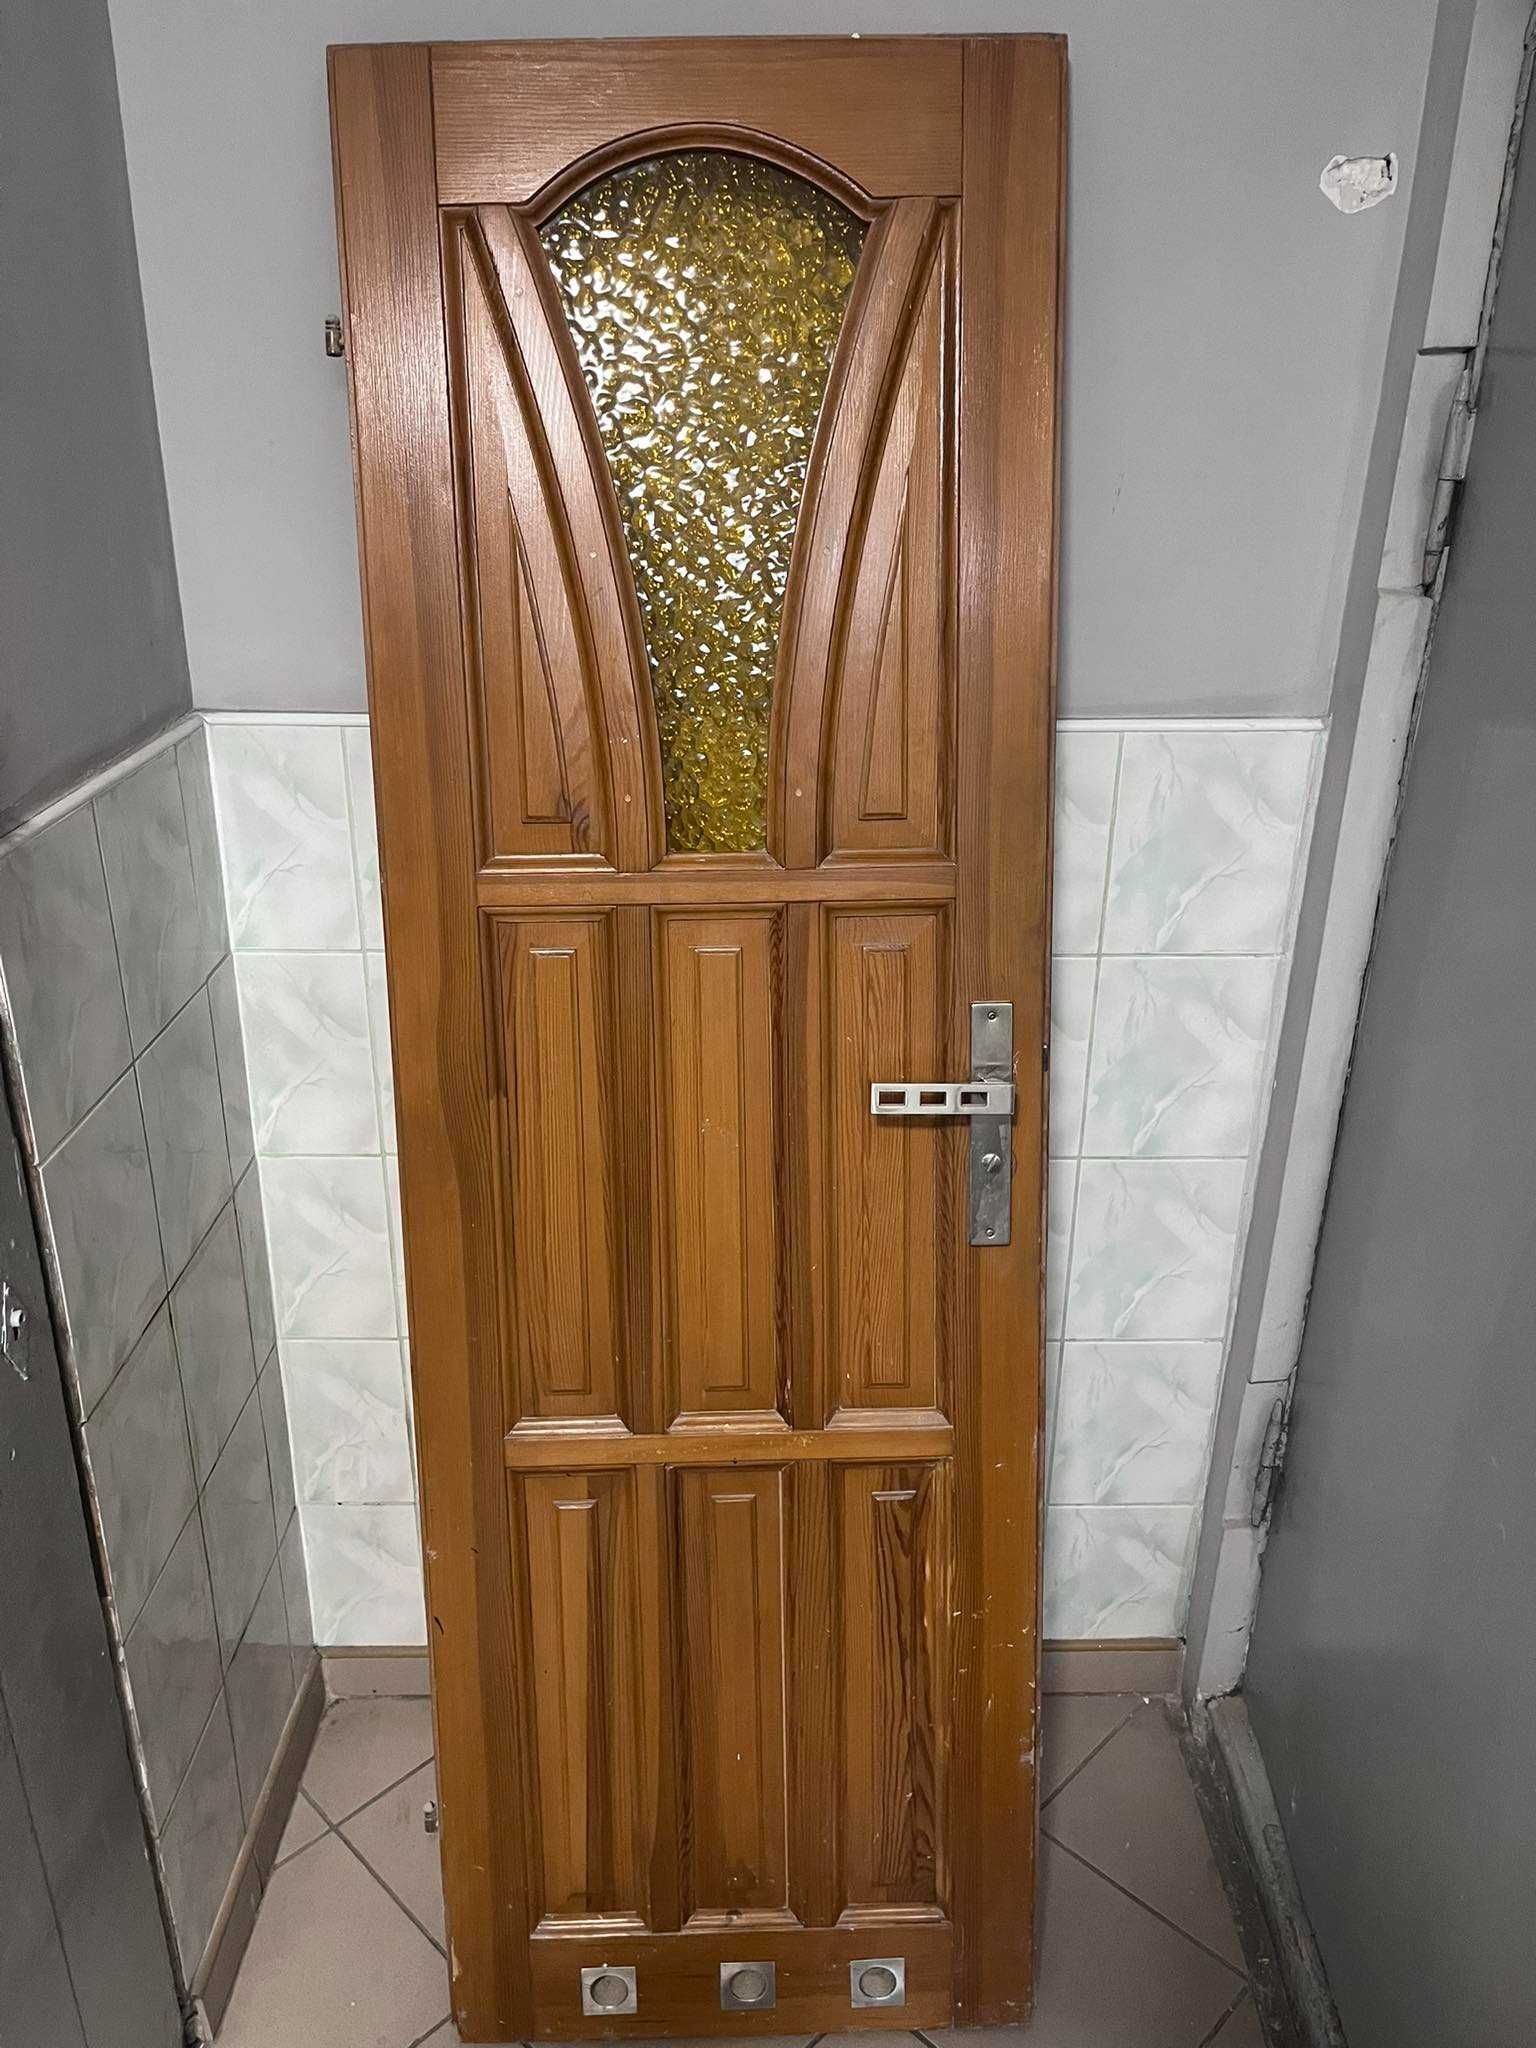 Drzwi drewniane łazienkowe